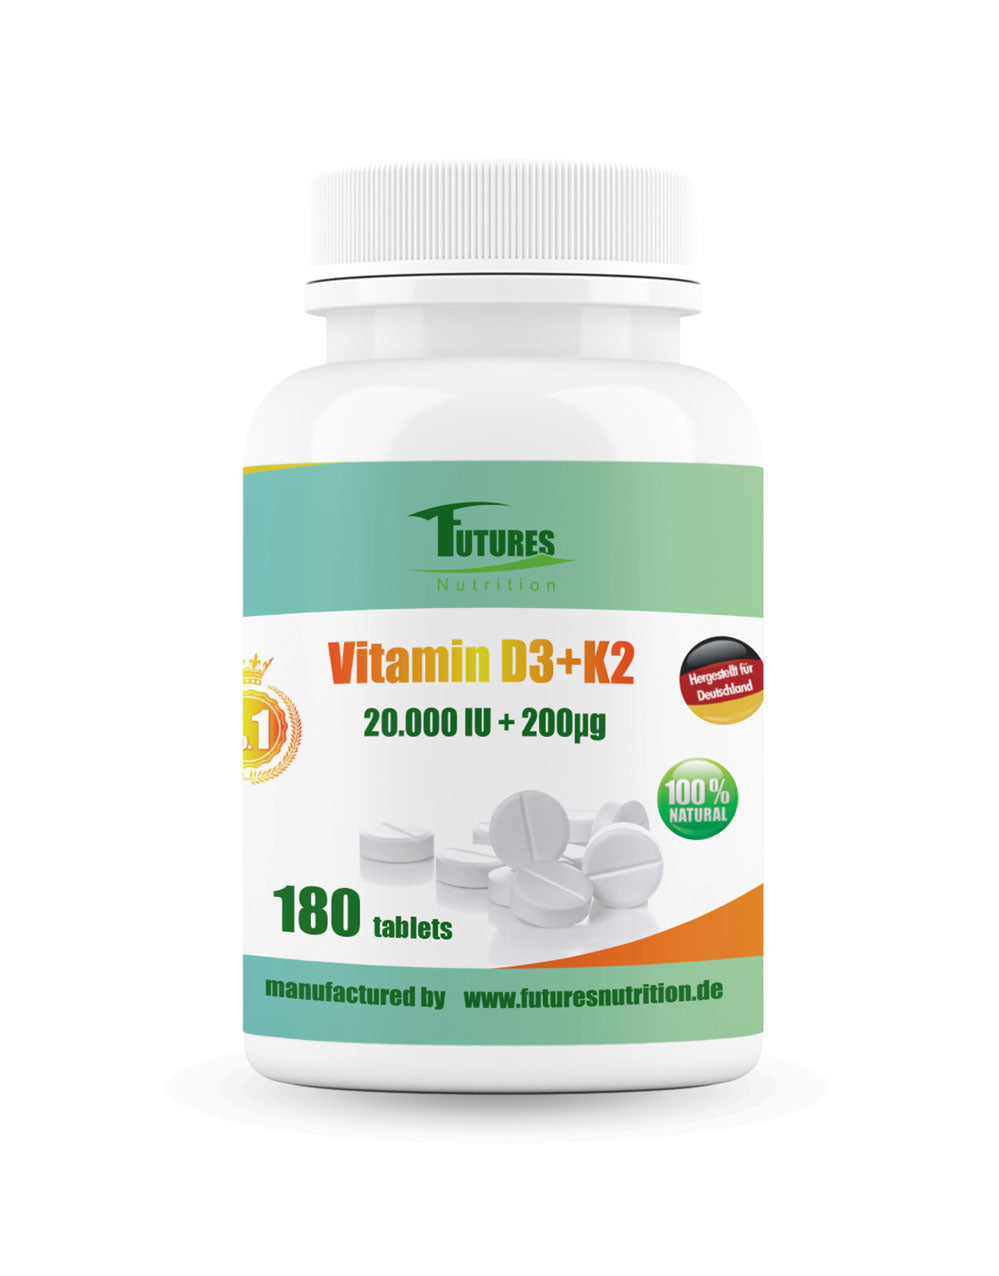 Vitamina D3 20000 I.e + k2 mk7 200 mcg super forte